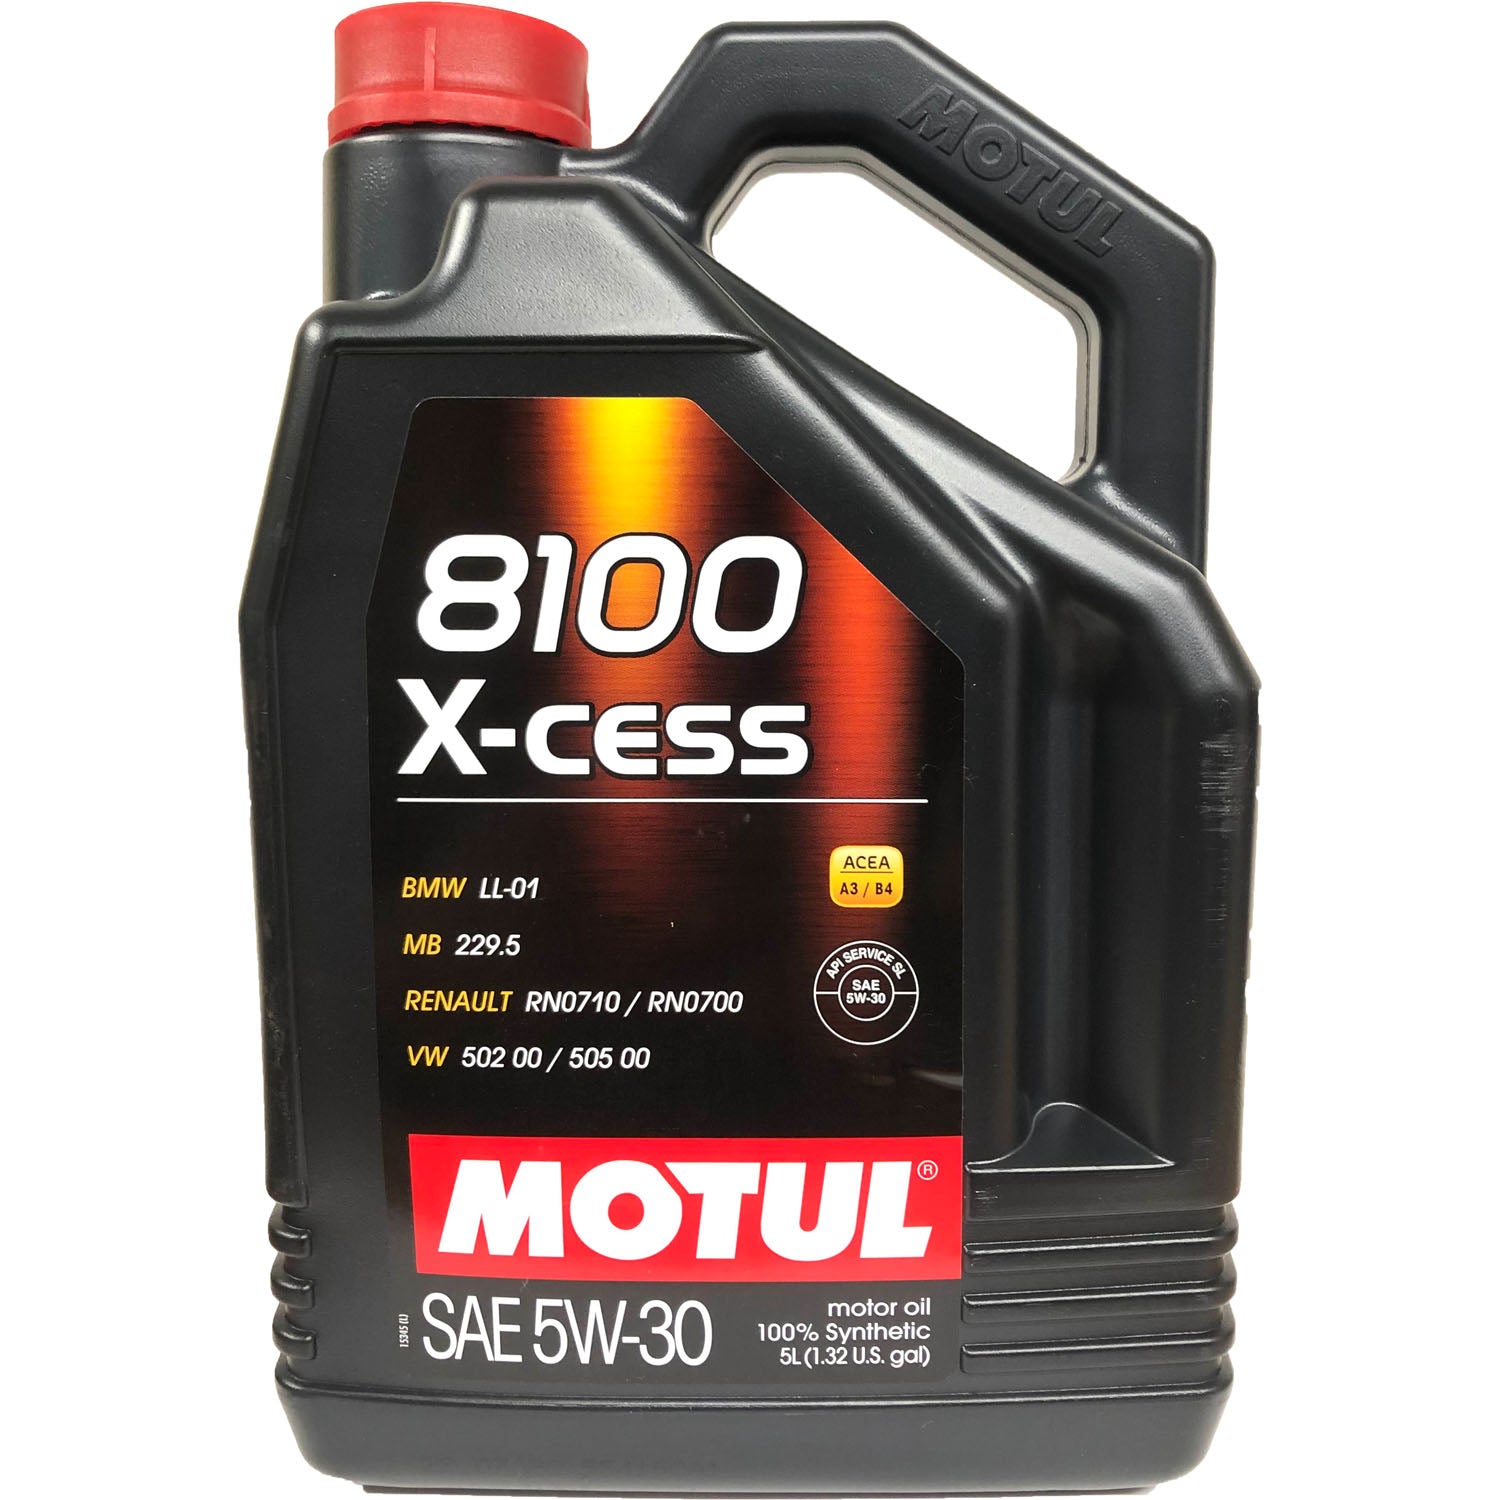 Motul 8100 X-cess Synthetic Motor Oil 5W30 - 5 Liter